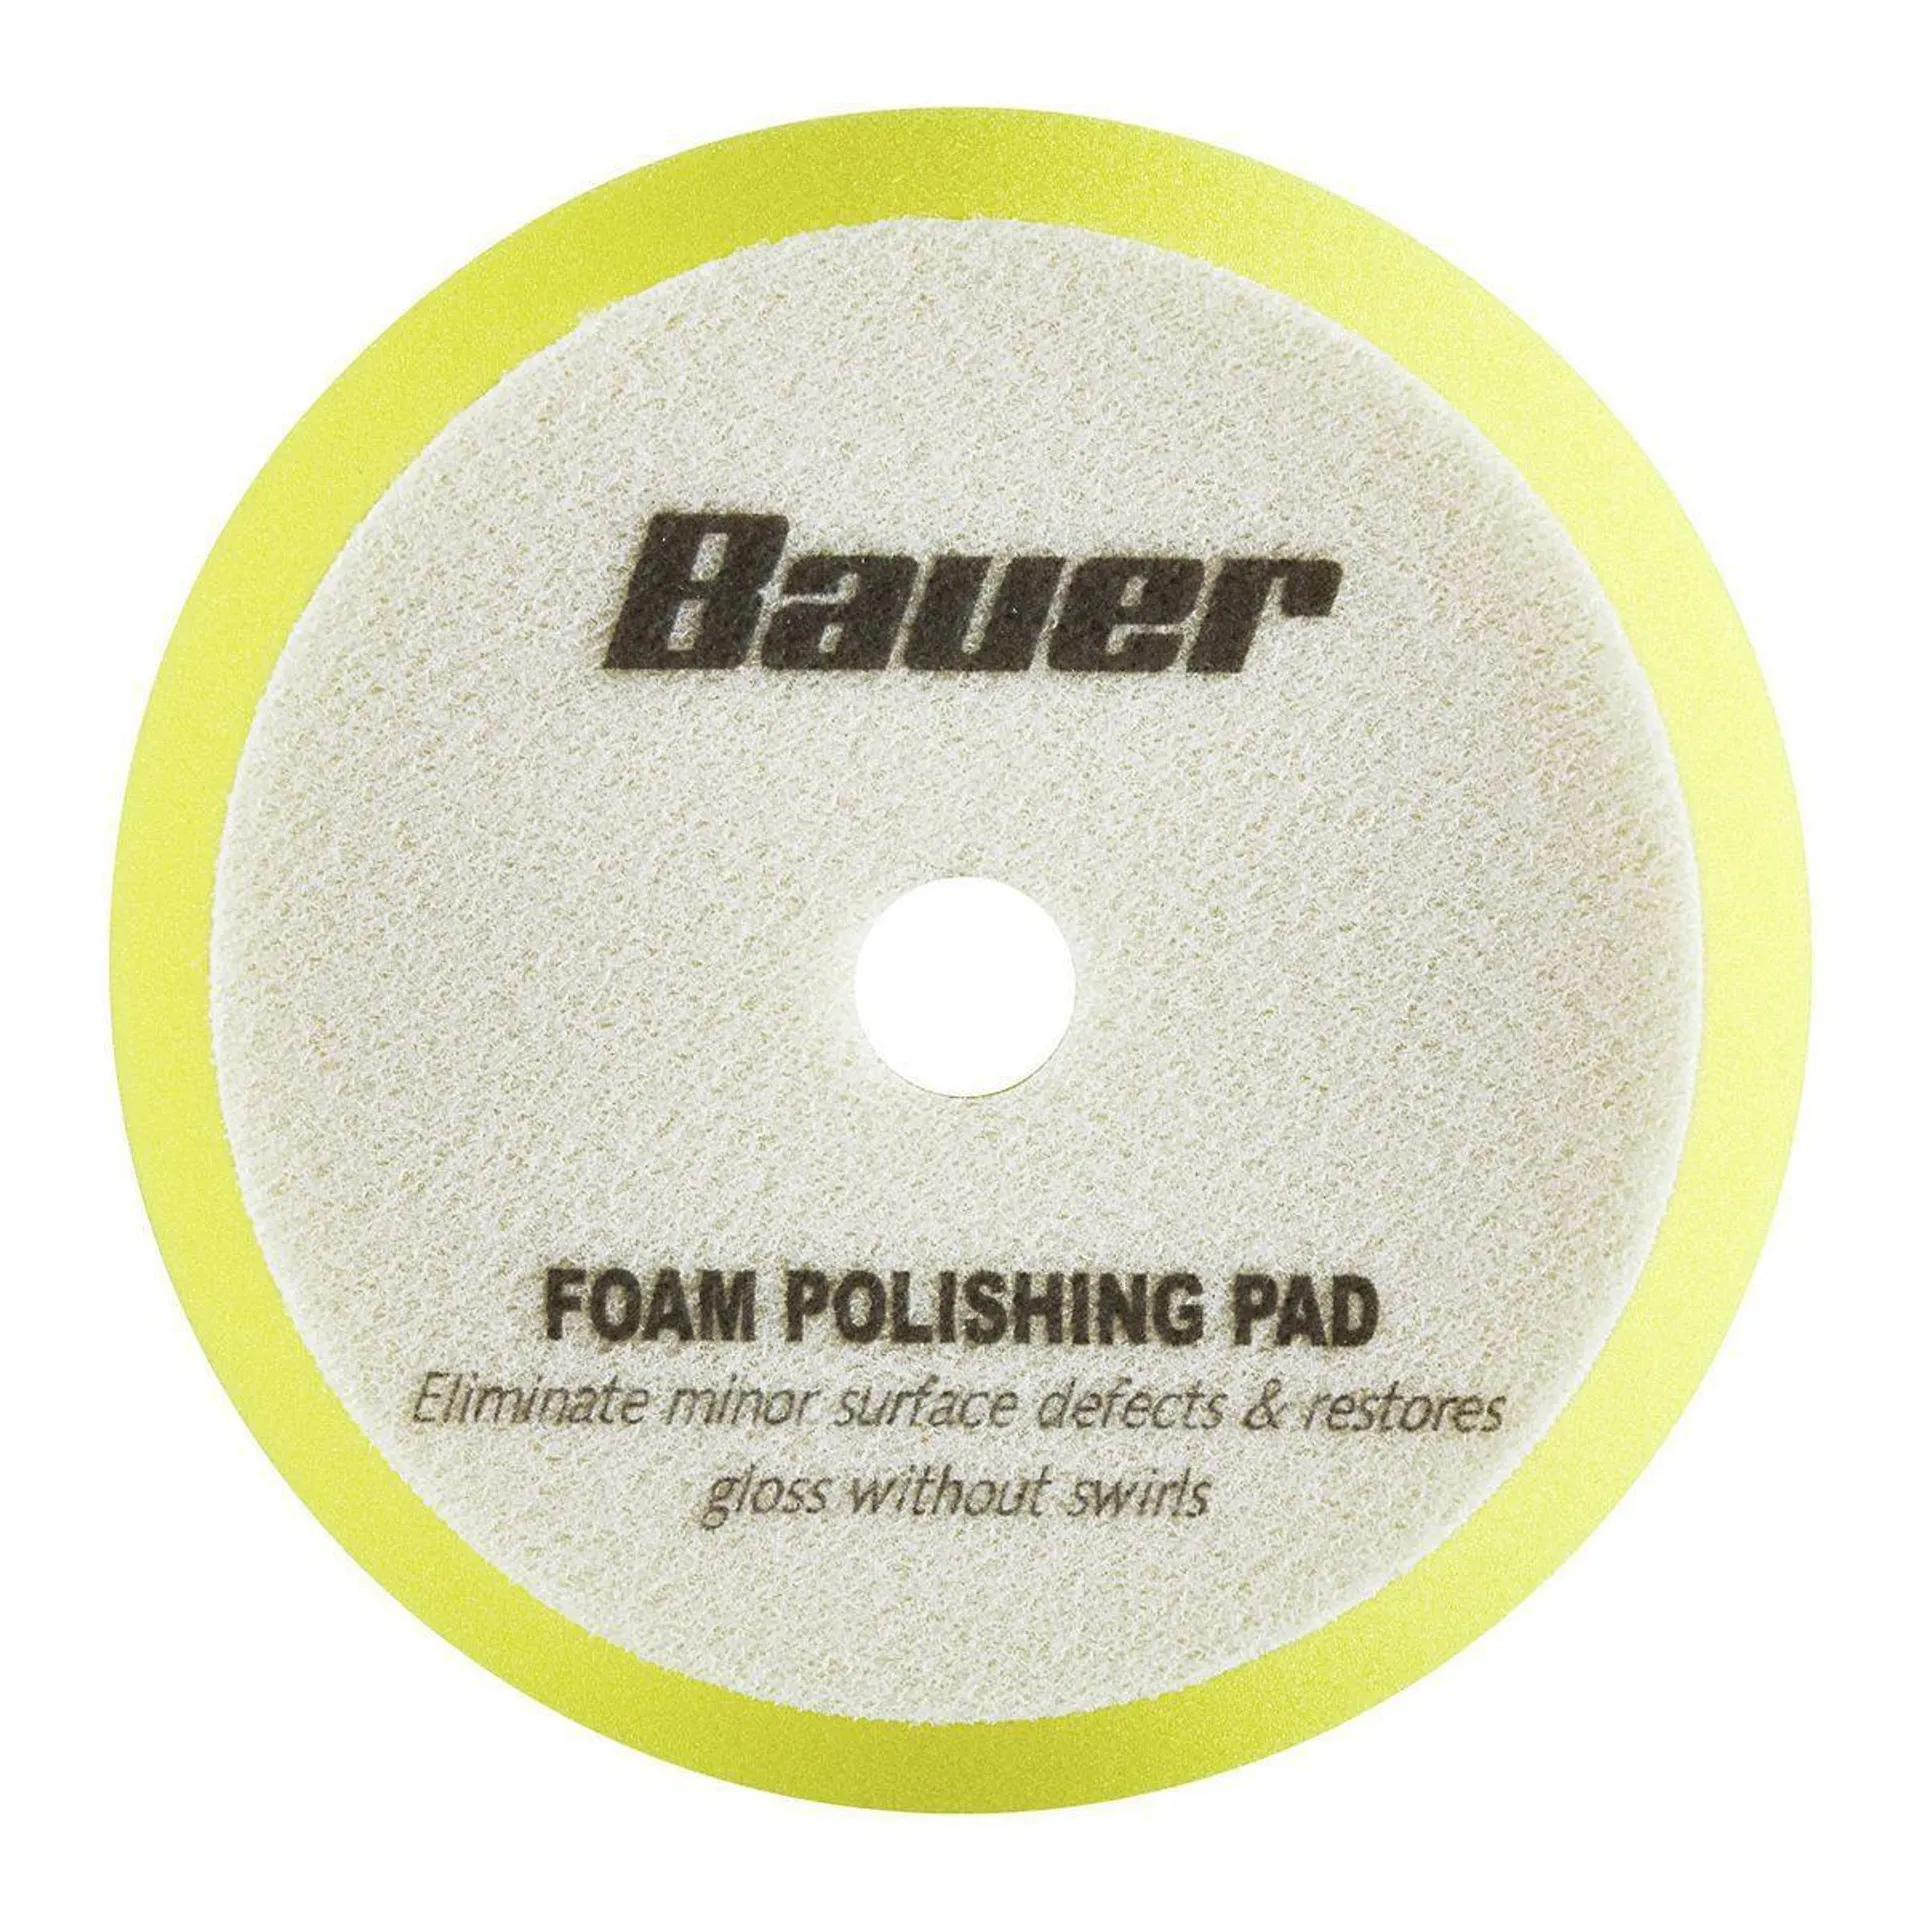 6 in. Fine Foam Polishing Pad - Yellow